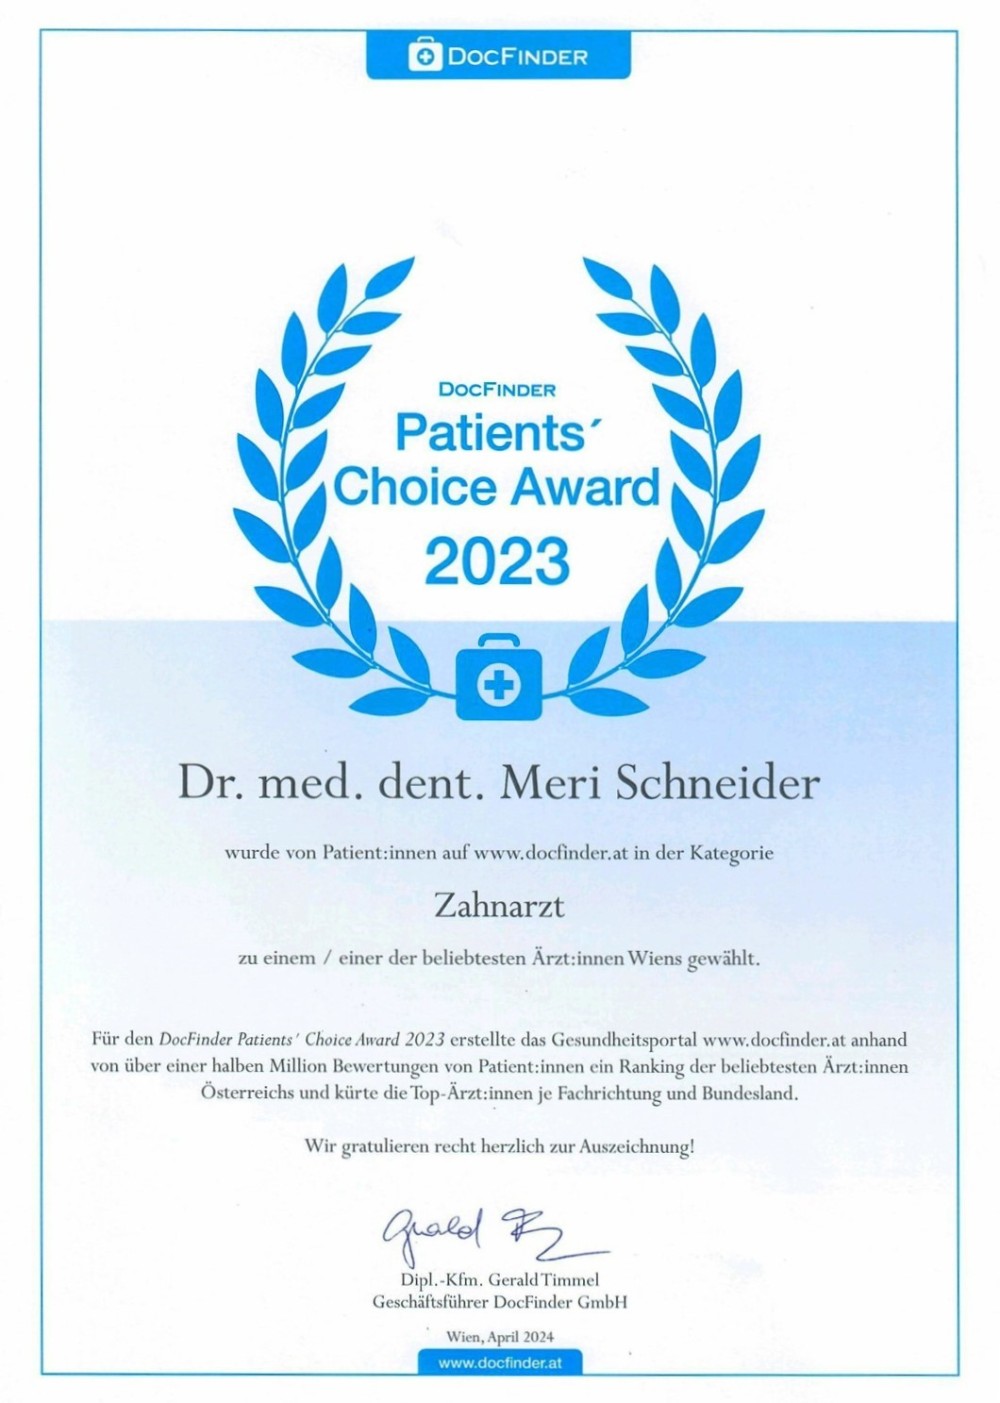 Patients' Choice Award 2023 - DocFinder Österreich